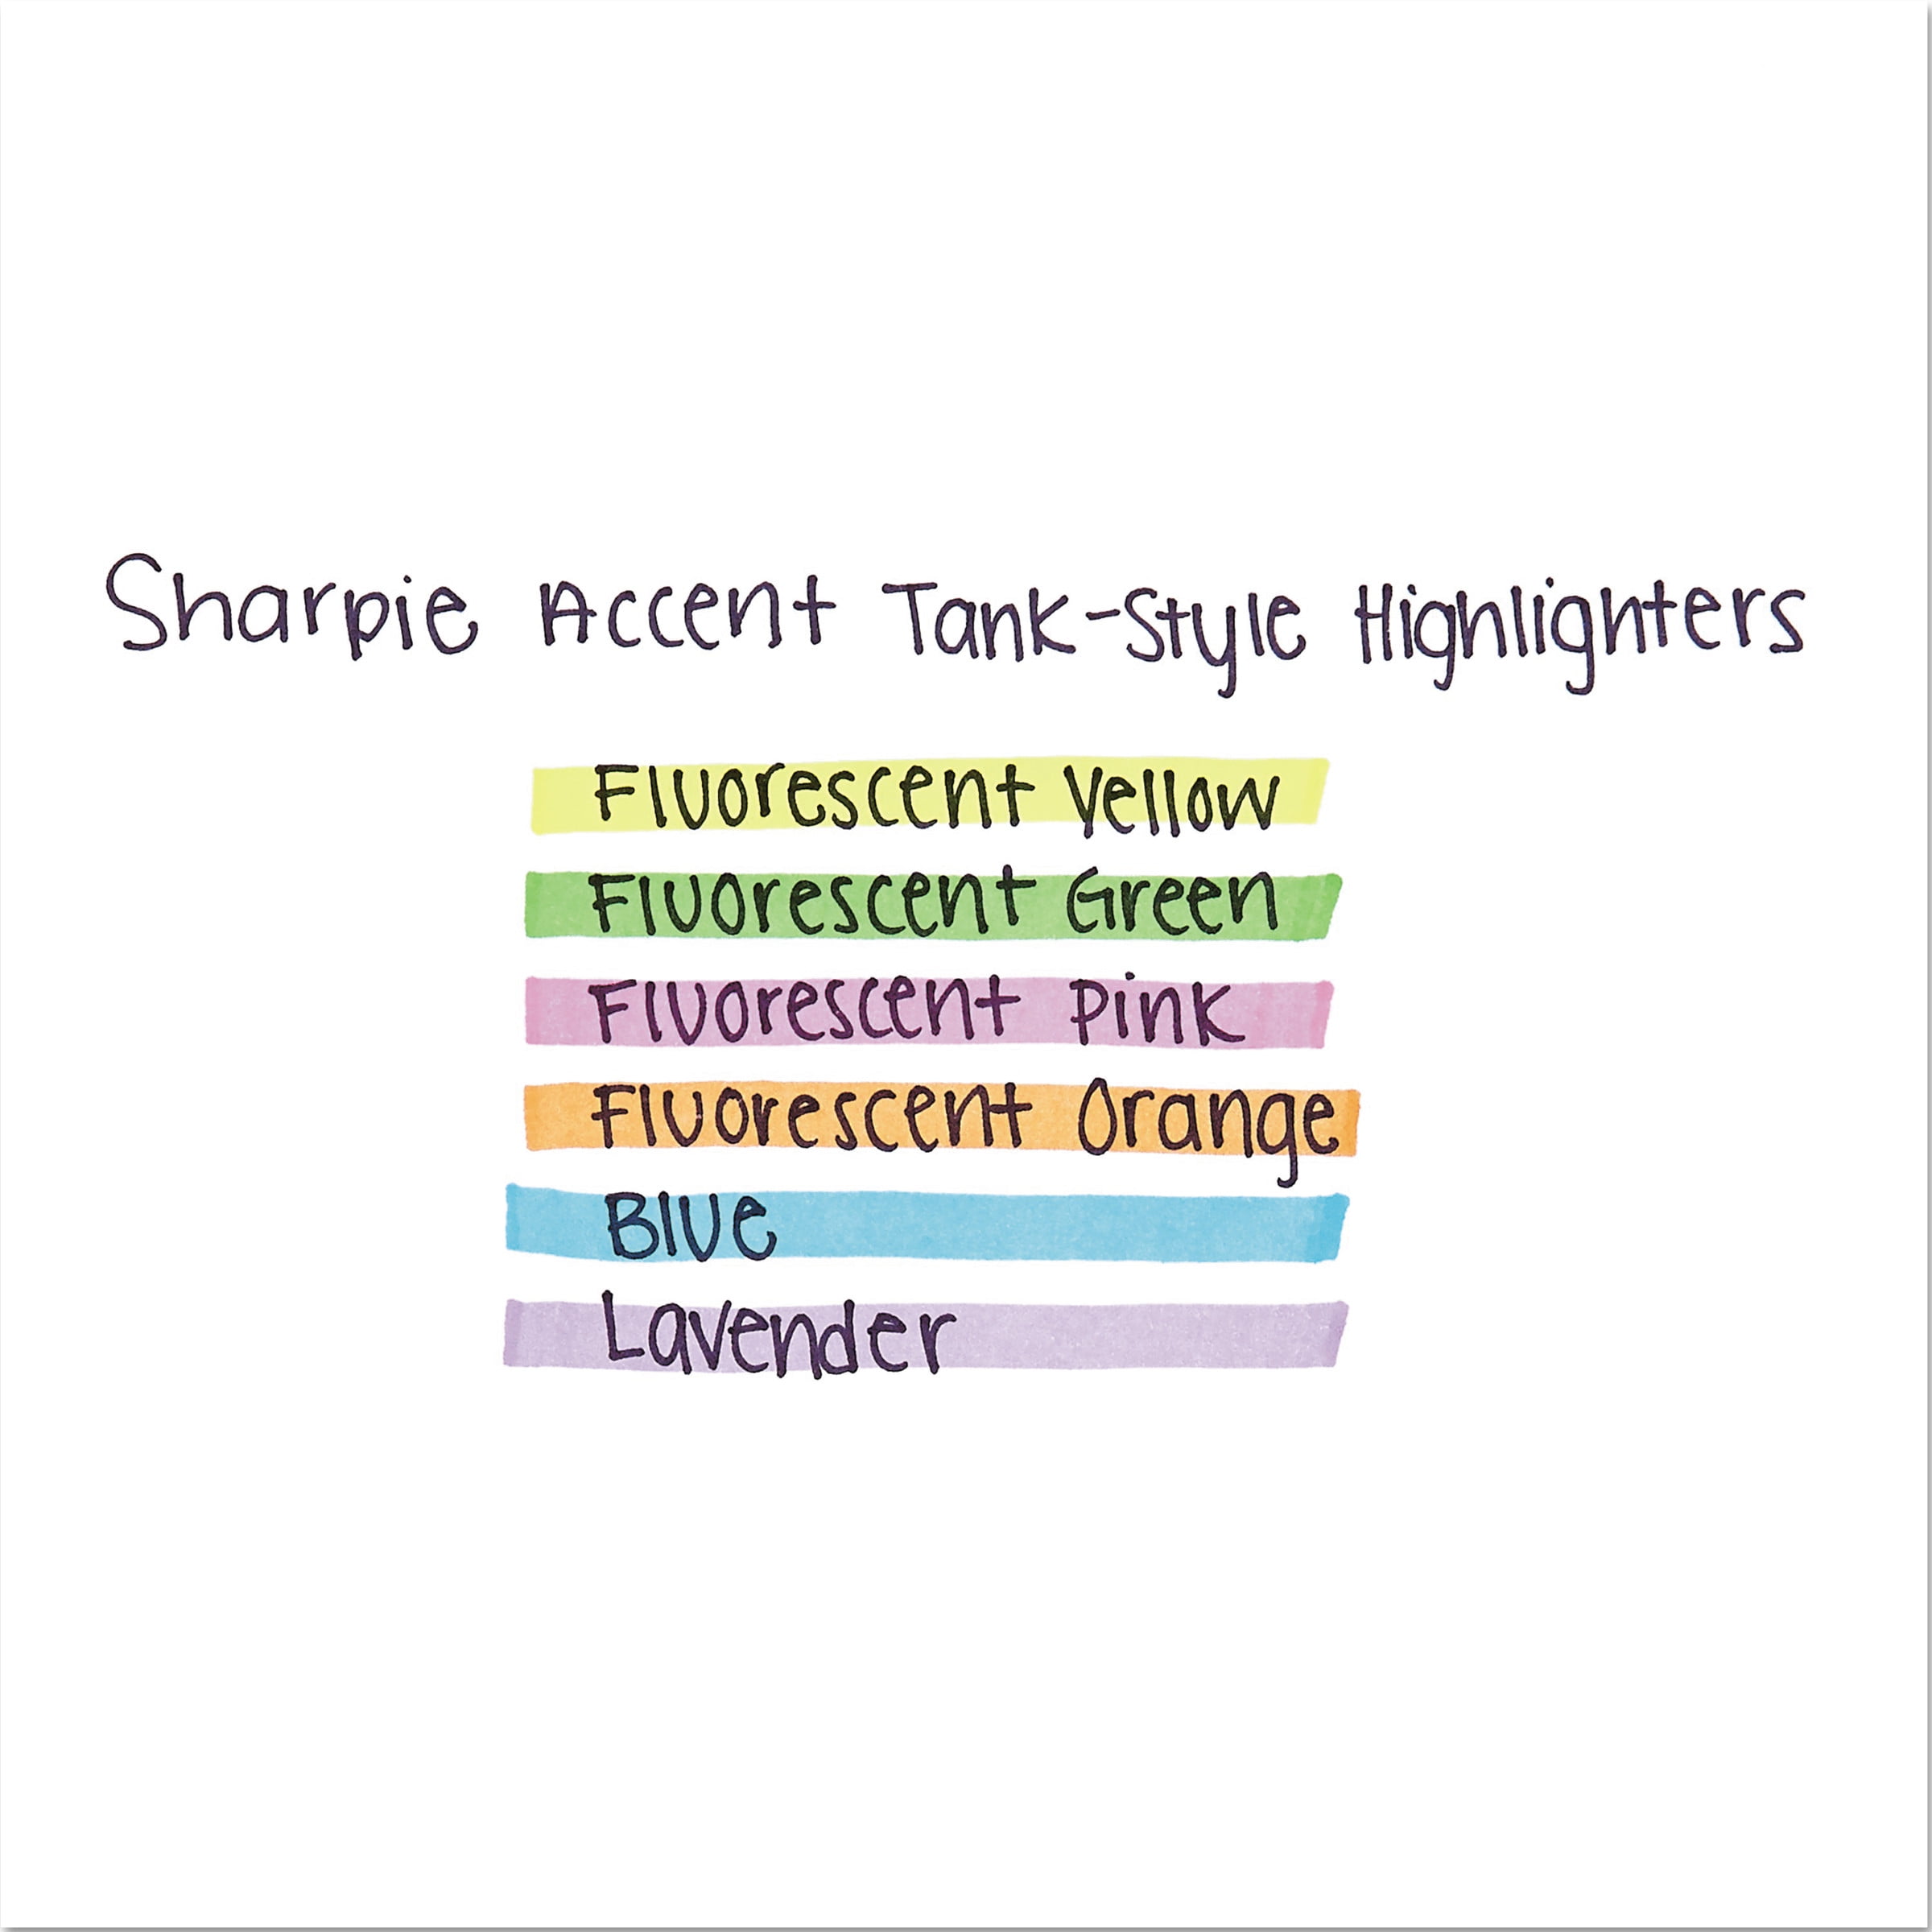 Sharpie Sharpie Accent® Highlighters, Fluorescent Yellow, 12/Case MK601FYE